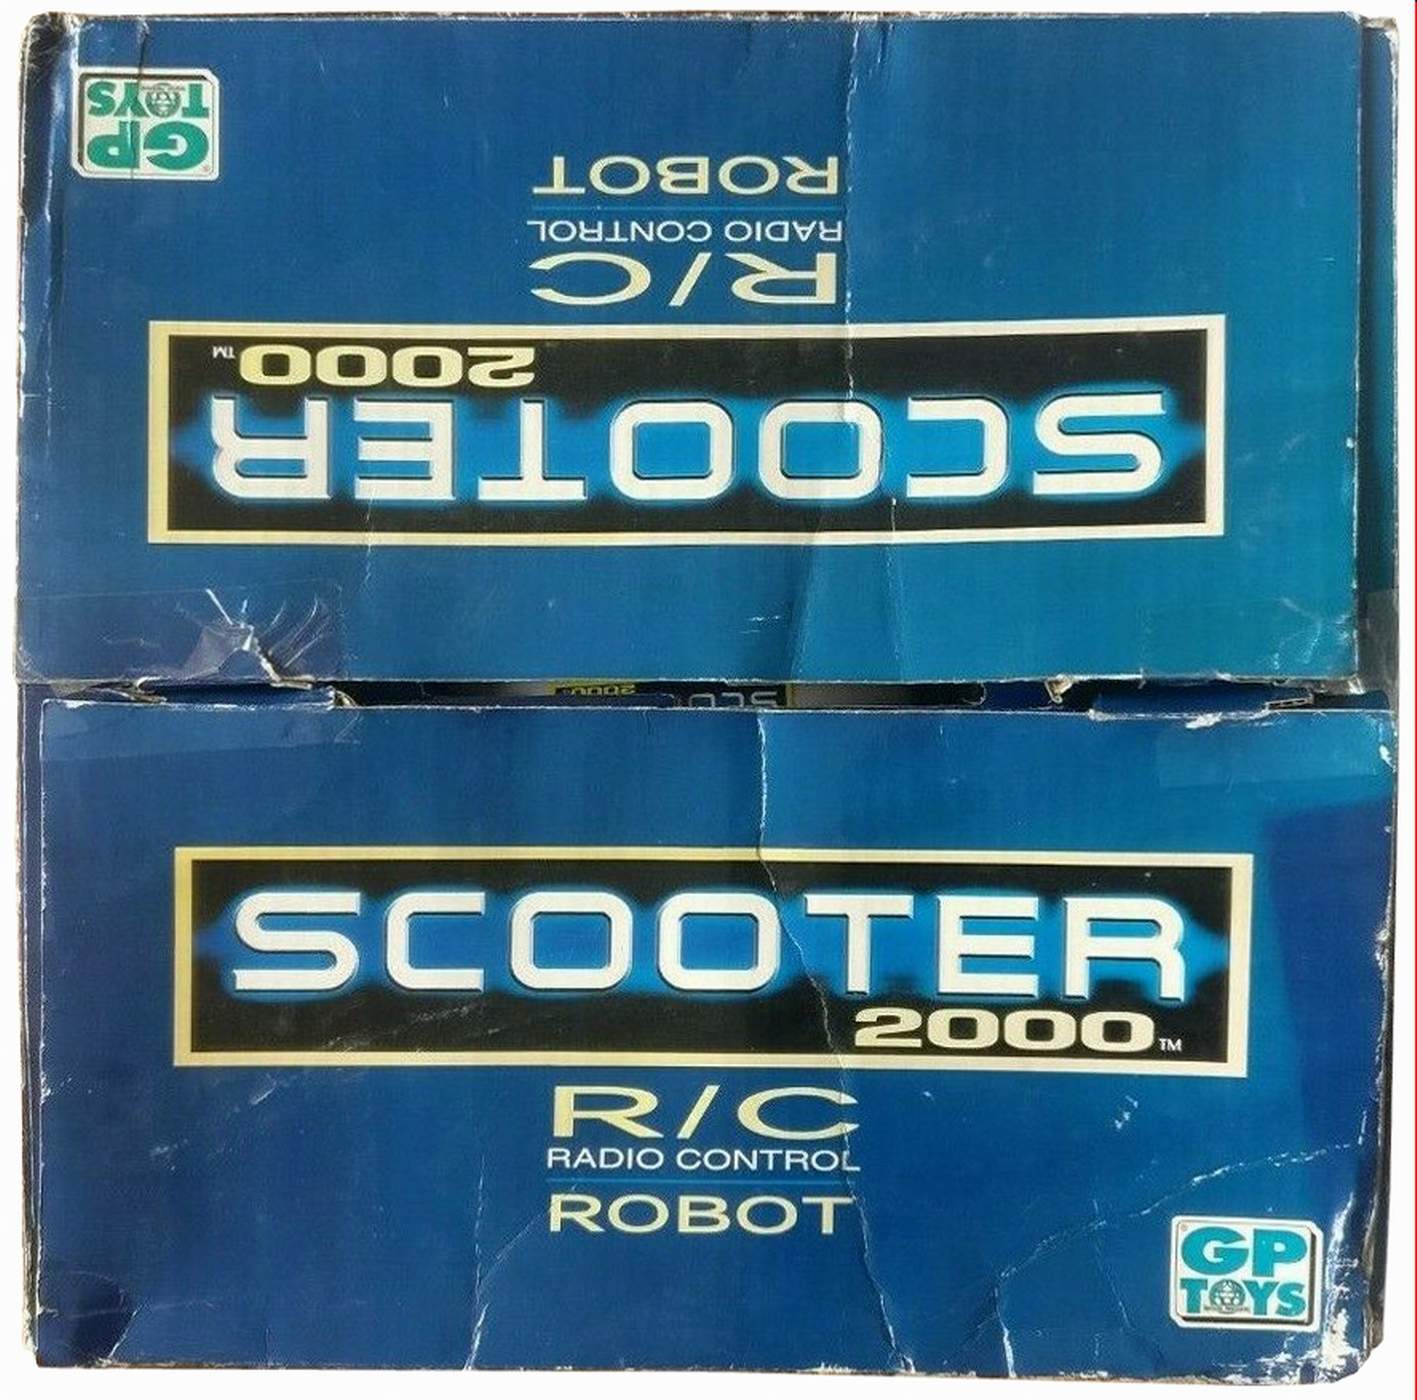 Sco0ter 2000 Robot